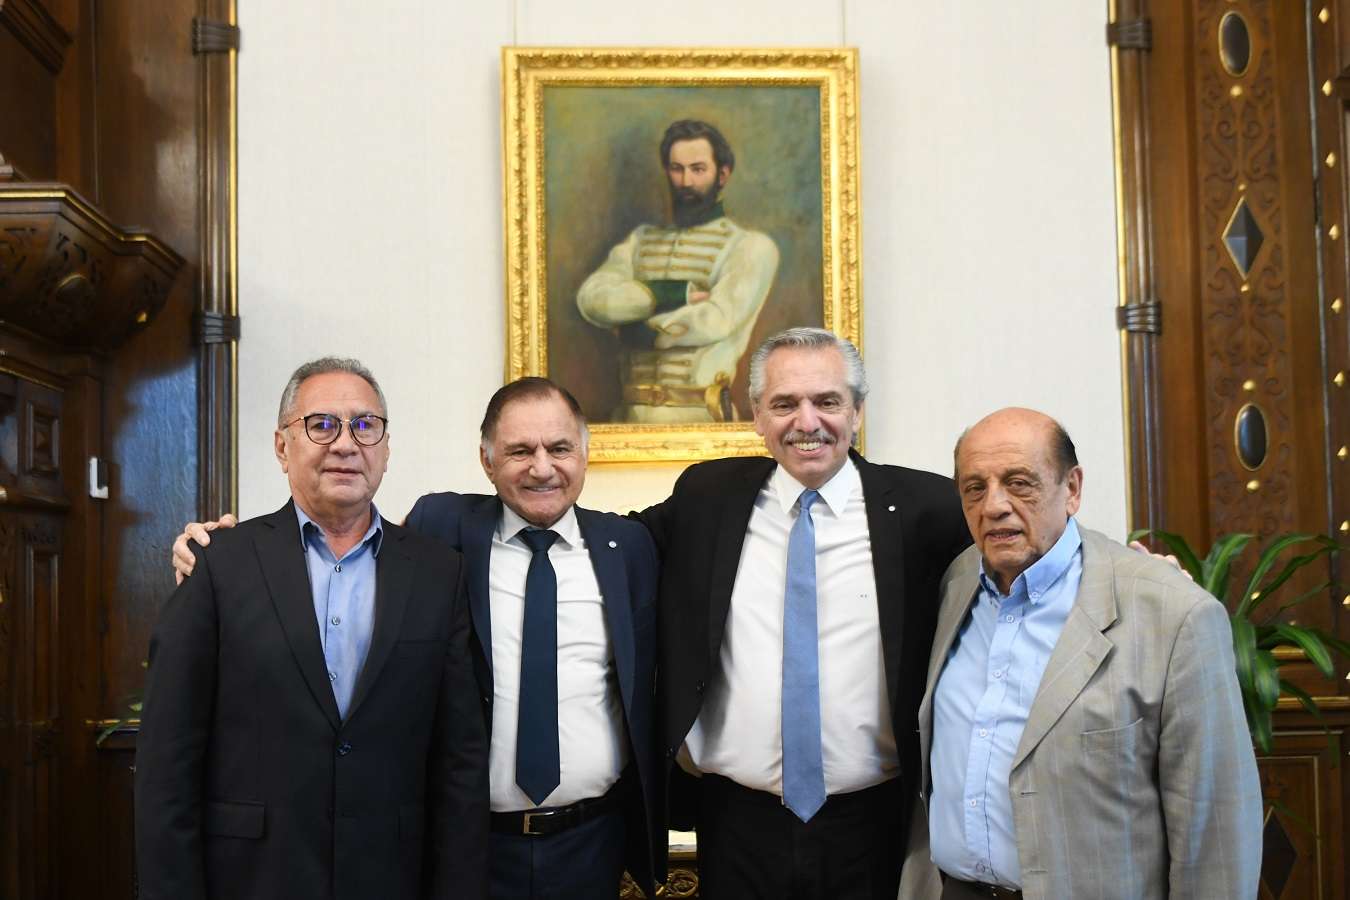 El Presidente recibió a los intendentes de Ituzaingó, Alberto Descalzo, de Berazategui, Juan José Mussi, y al diputado nacional y exjefe comunal de Florencio Varela, Julio Pereyra.